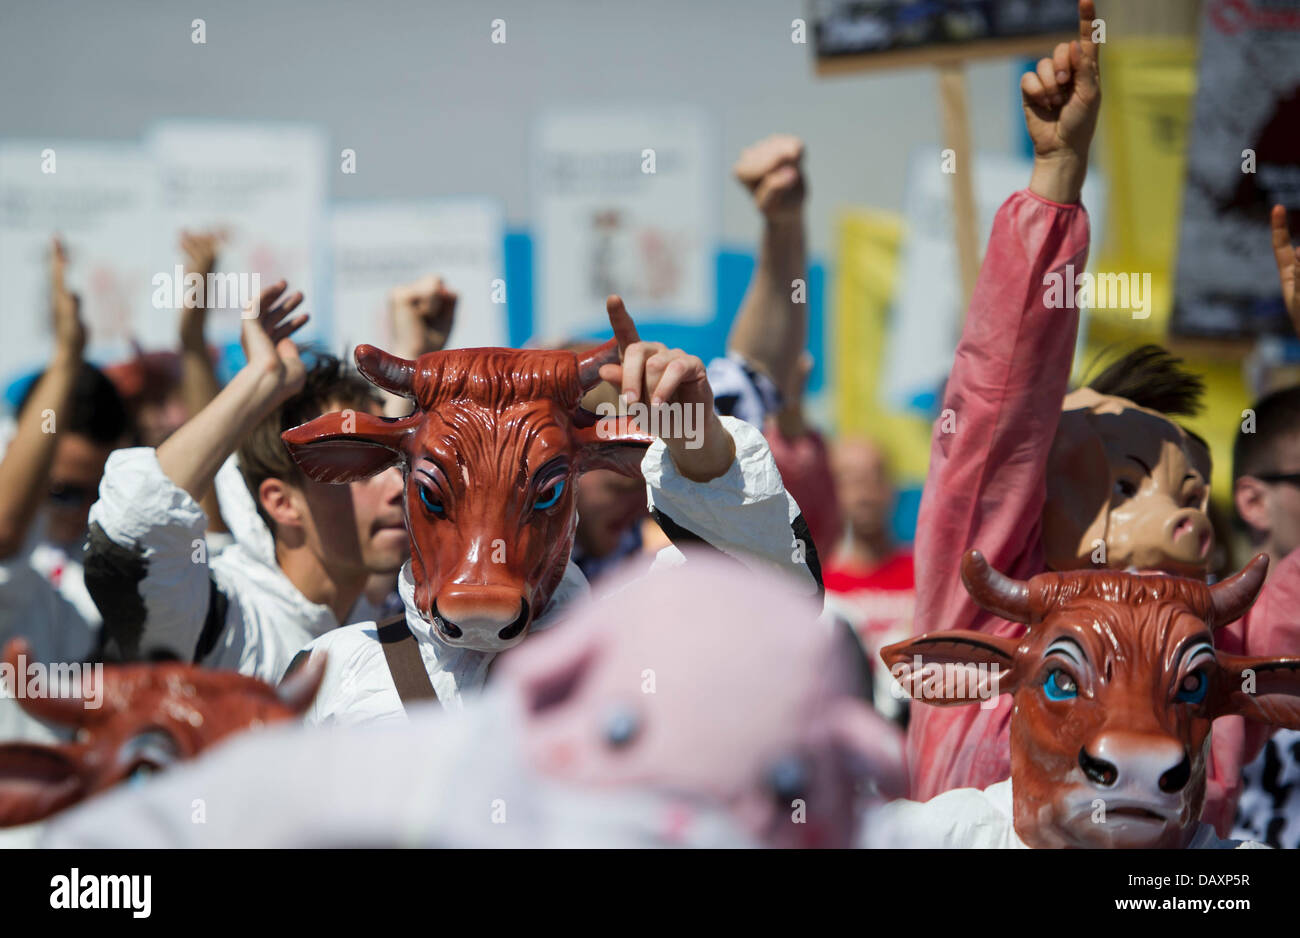 Berlino, Germania. Il 20 luglio, 2013. I vegetariani vestito di latte di mucca e di costumi di maiale protesta contro il terzo Veggie Parade contro il consumo di prodotti di origine animale. Foto: OLE SPATA/dpa/Alamy Live News Foto Stock